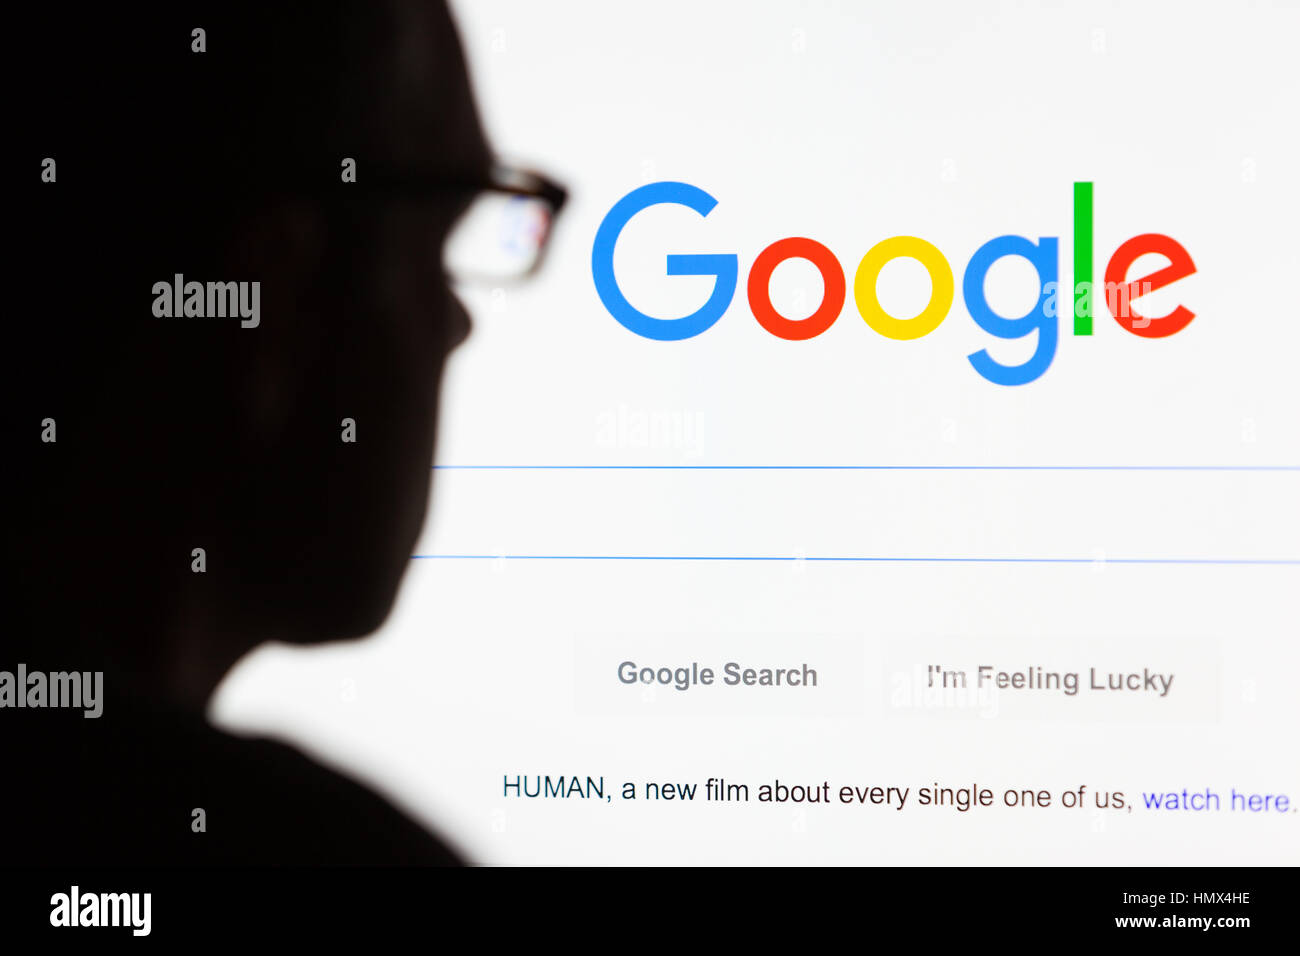 BATH, Großbritannien - 12. September 2015: Nahaufnahme der Google.com Suche Homepage angezeigt auf einem LCD-Bildschirm mit der Silhouette eines Mannes Kopf aus o Stockfoto